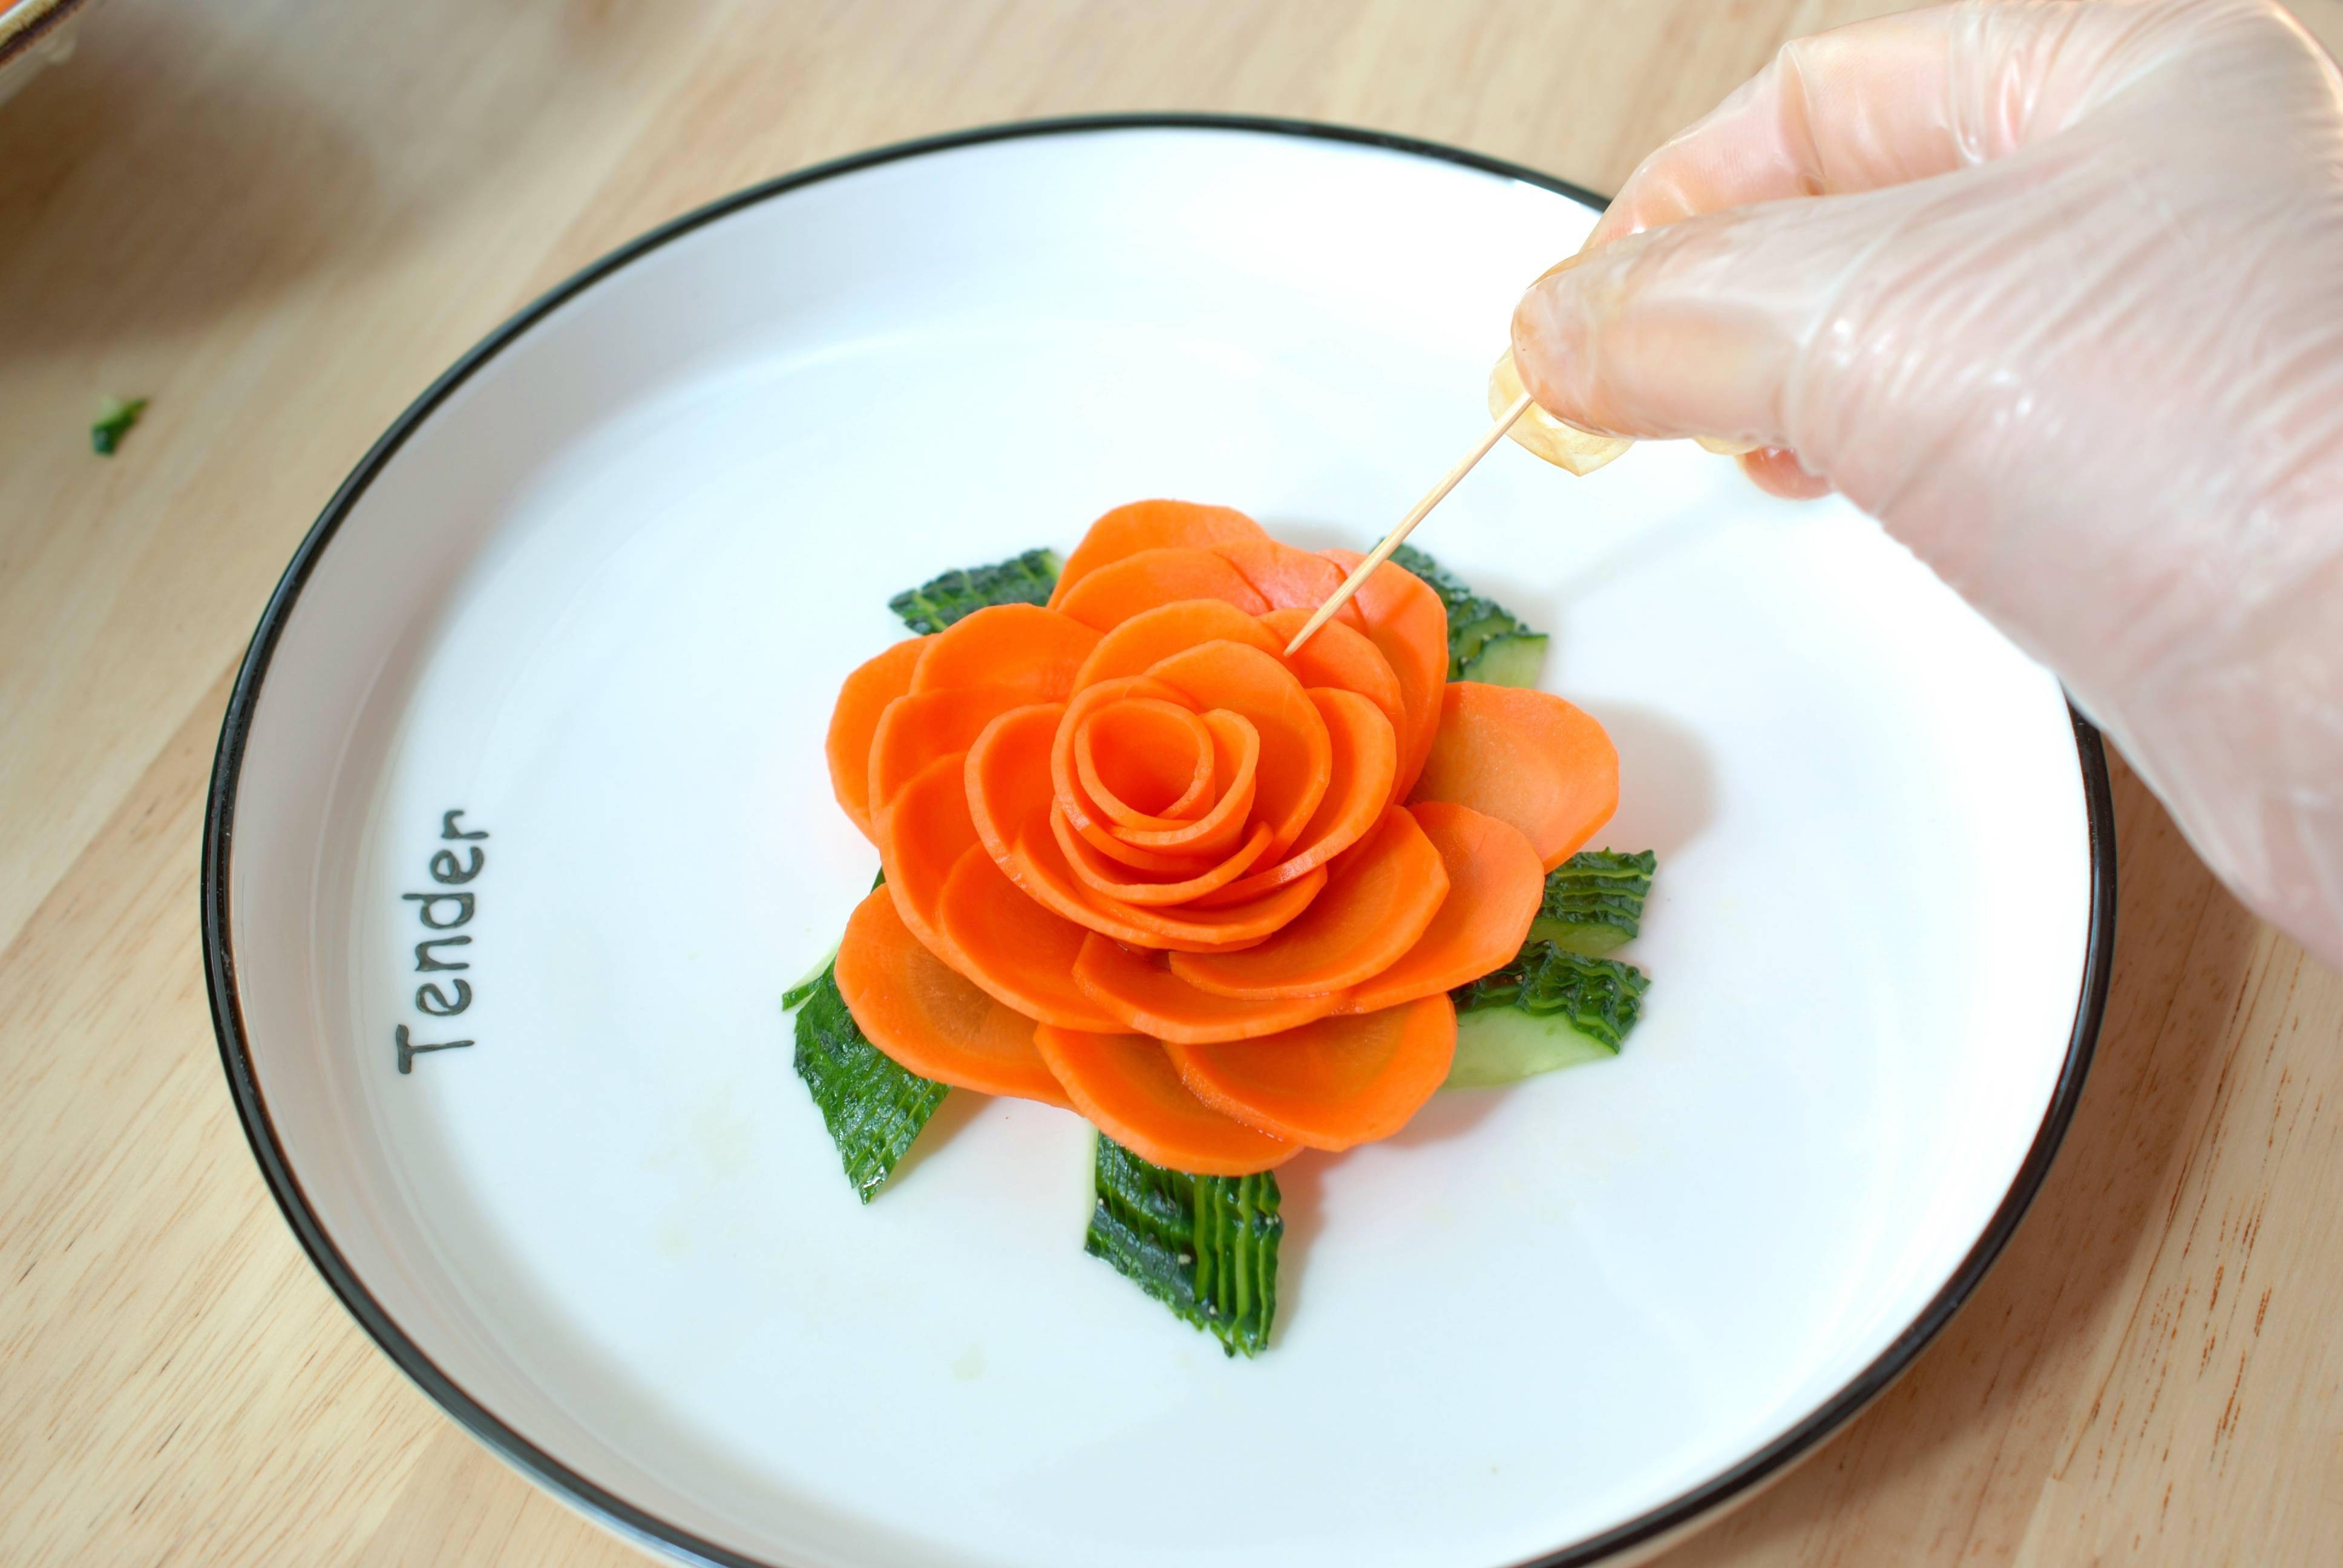 用1根胡萝卜做漂亮的萝卜花过年的菜品就用它来装饰太漂亮了_胡萝卜花的做法图解_美食图片